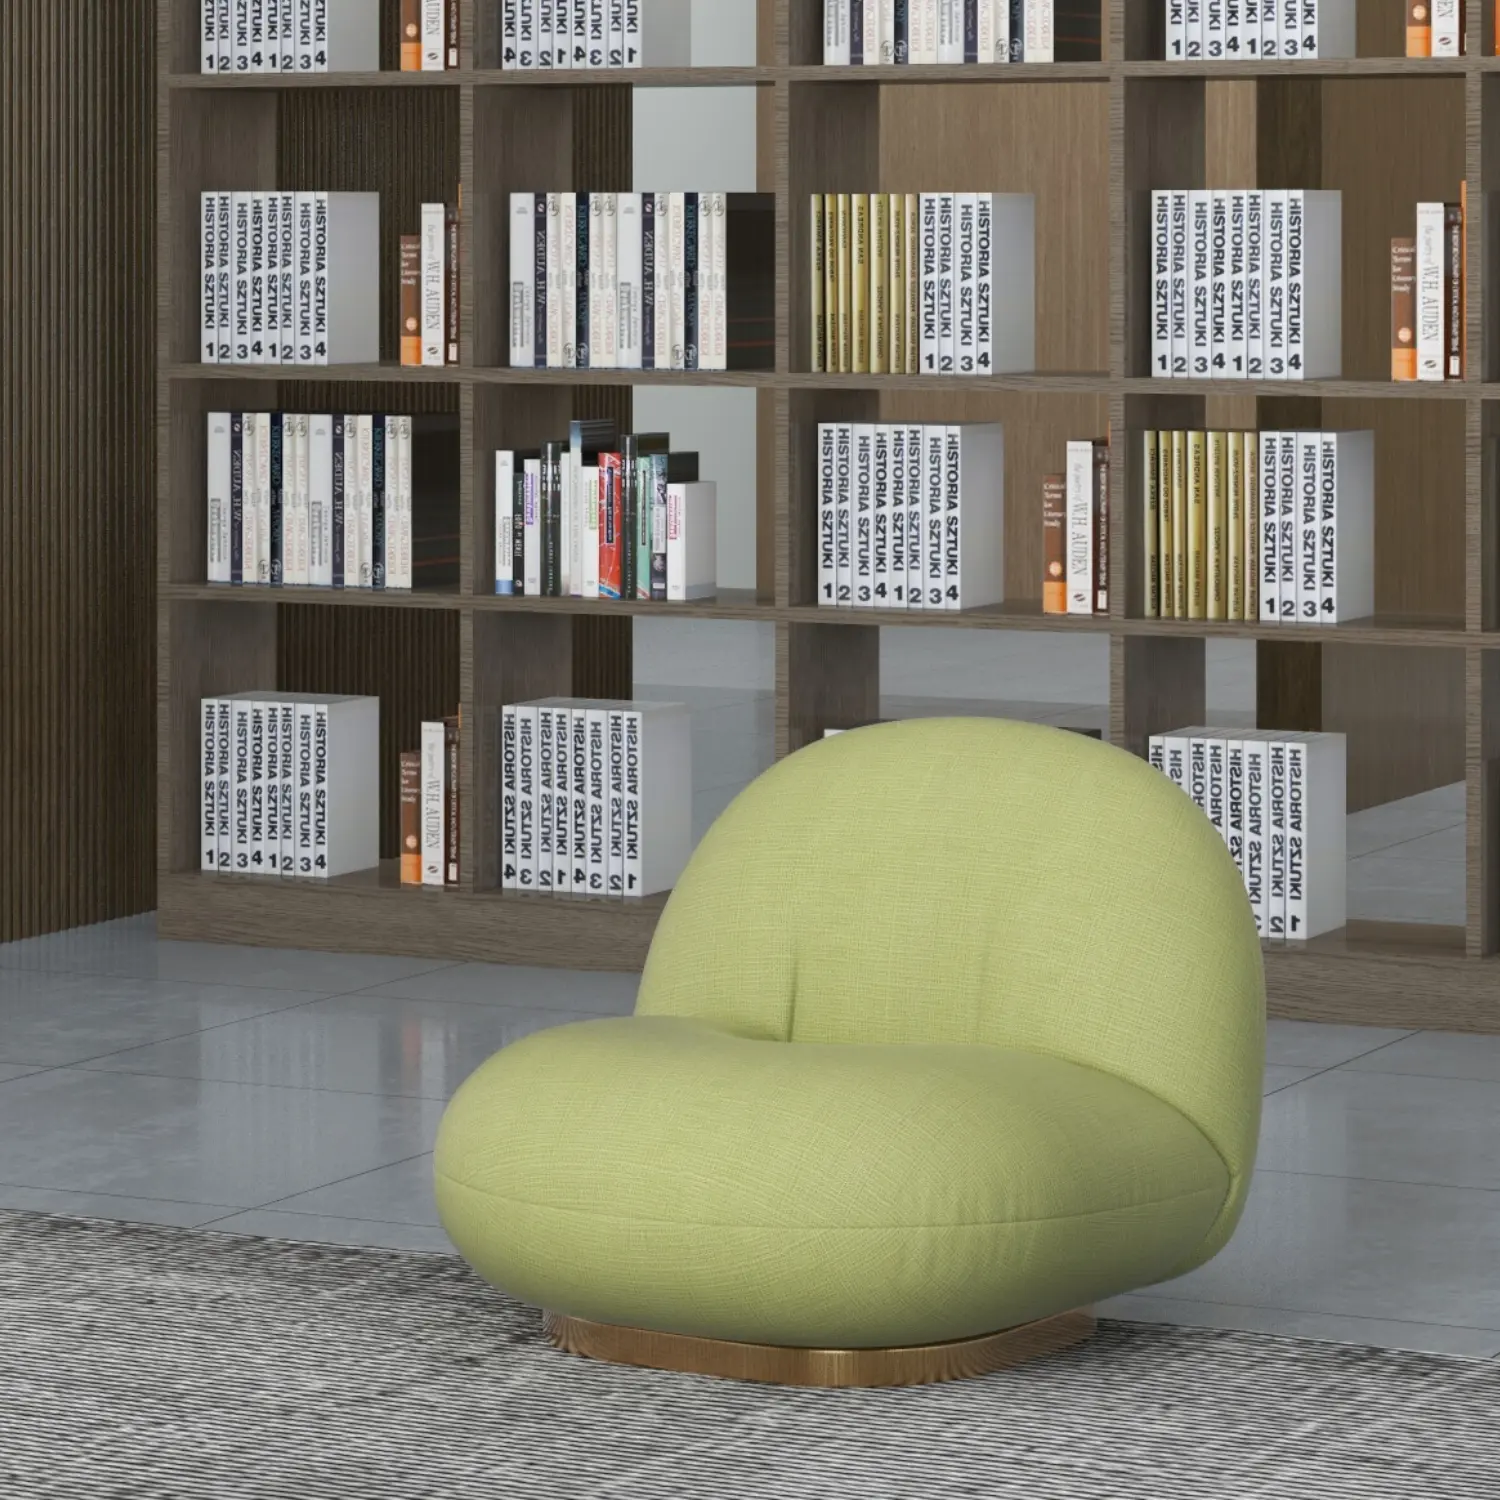 Individueller amerikanischer Stil Hocker und Schwenkstuhl zu konkurrenzfähigem Preis Couchsofa Salonmöbel Export aus Vietnam